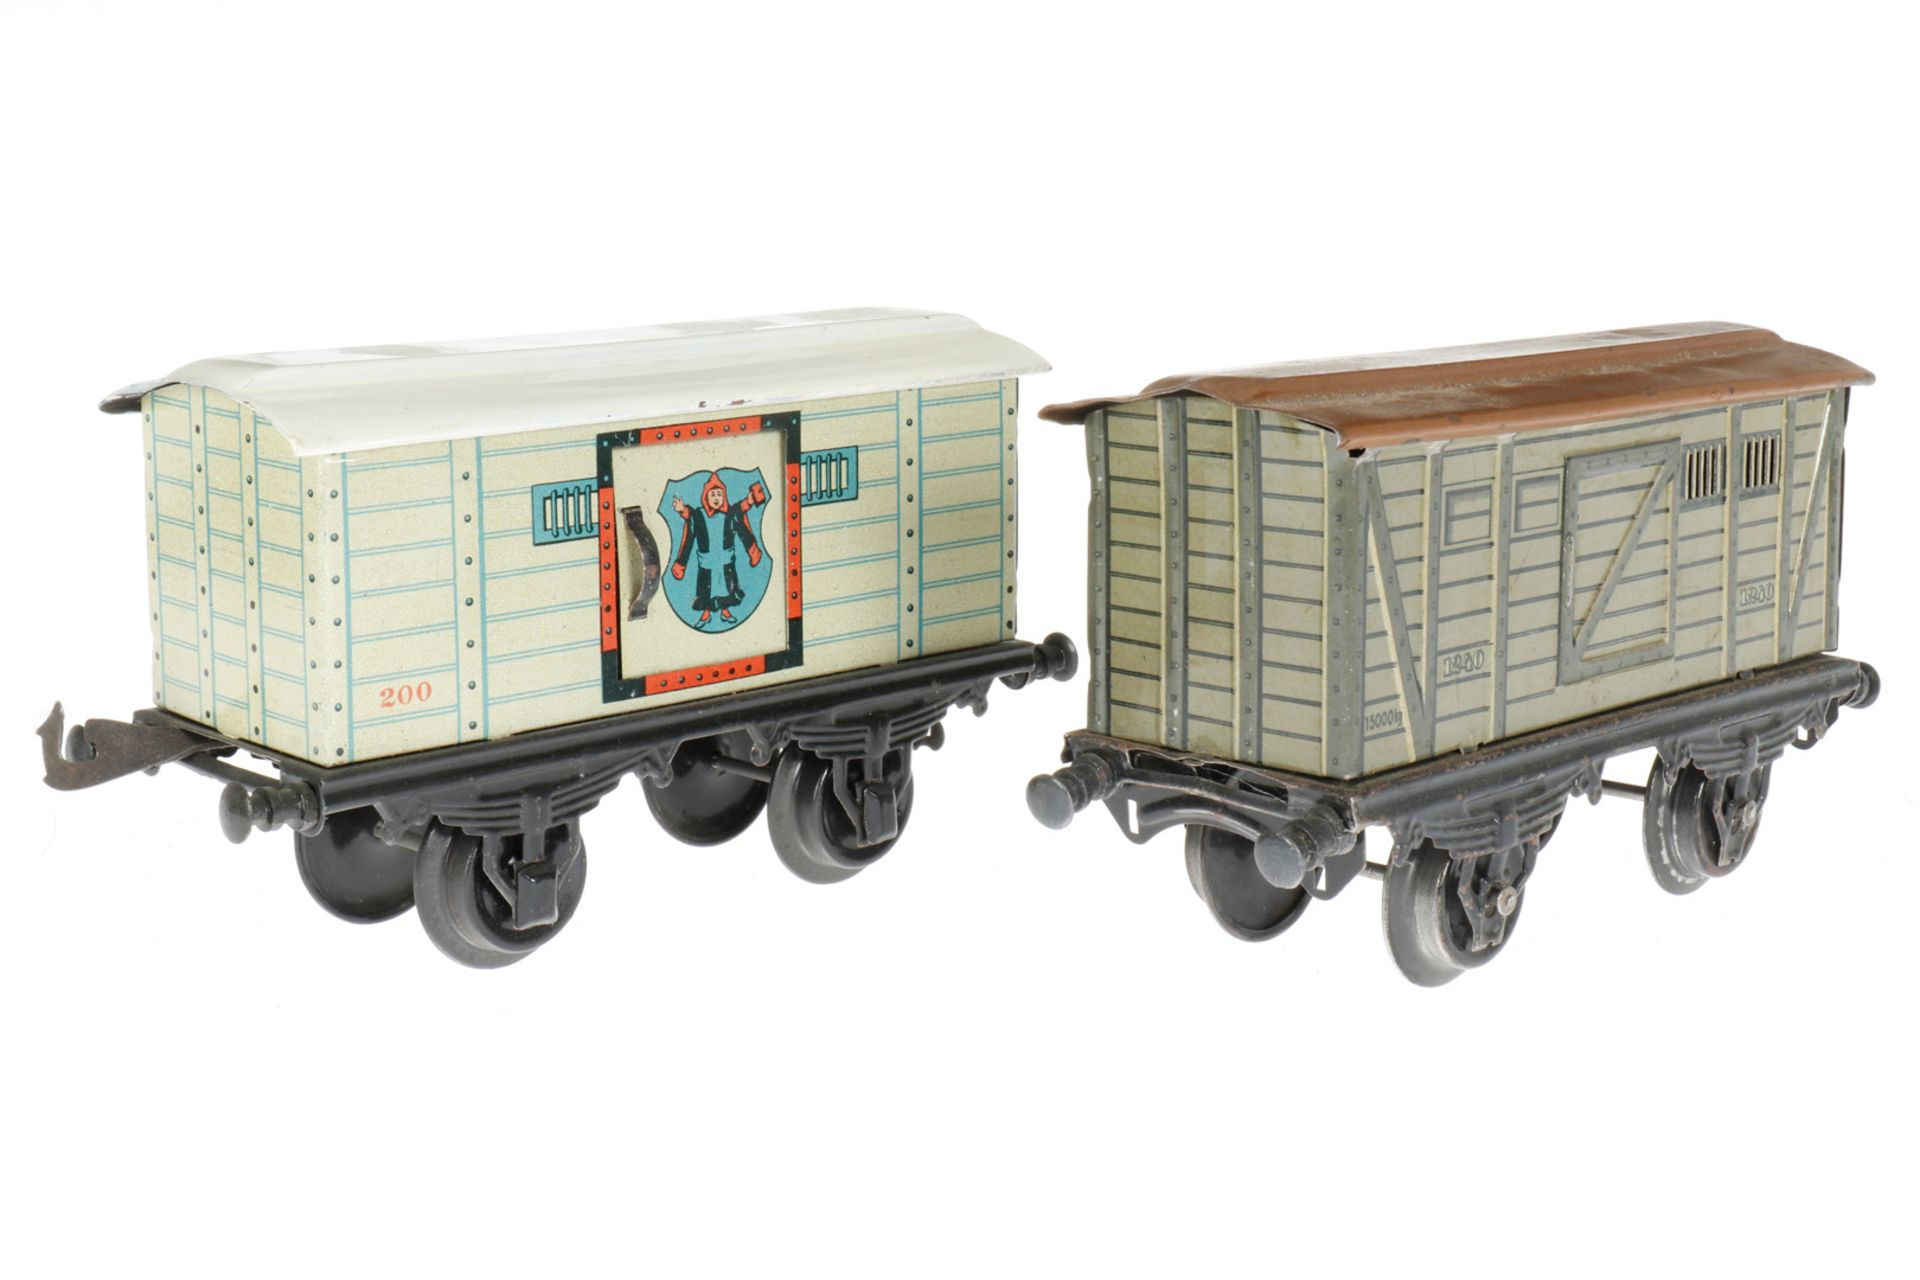 2 Bing Güterwagen 10/522 und 10328, S 1, CL, 1 ohne Kupplungen, LS und gealterter Lack, L 19, im